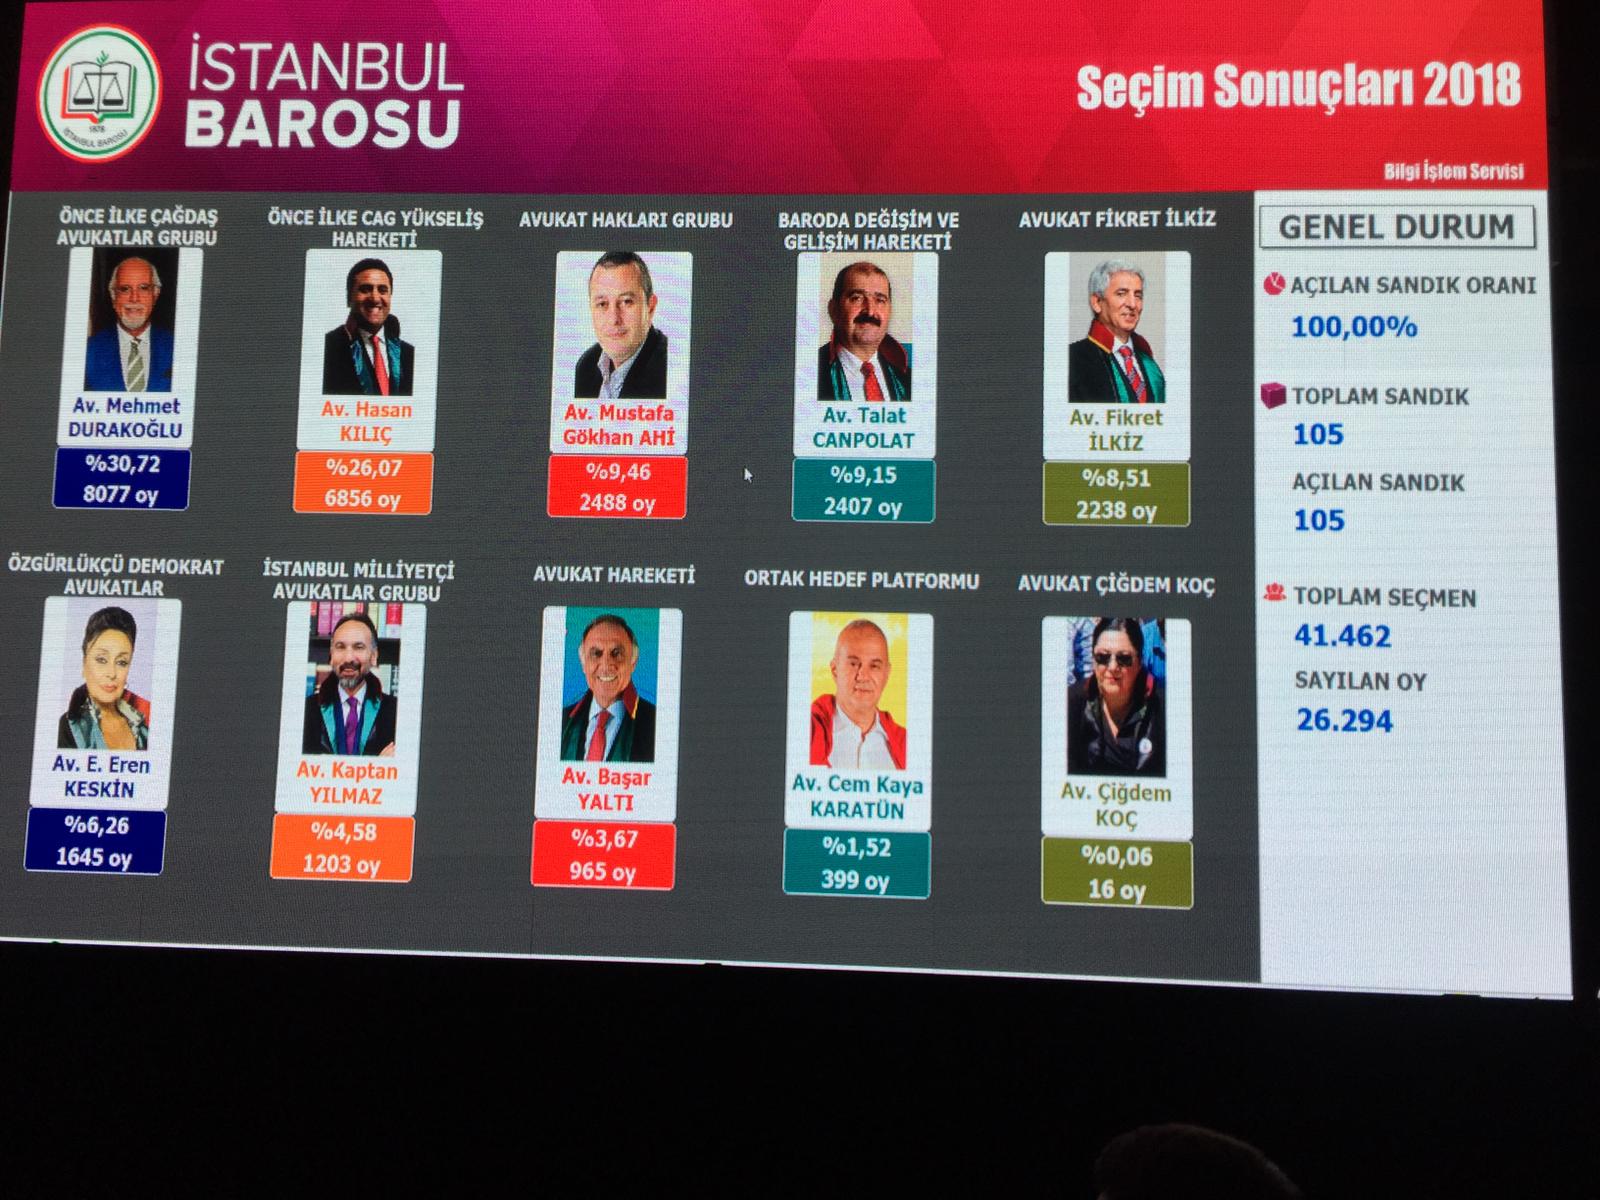 İstanbul Barosu'nun yeni başkanı belli oldu